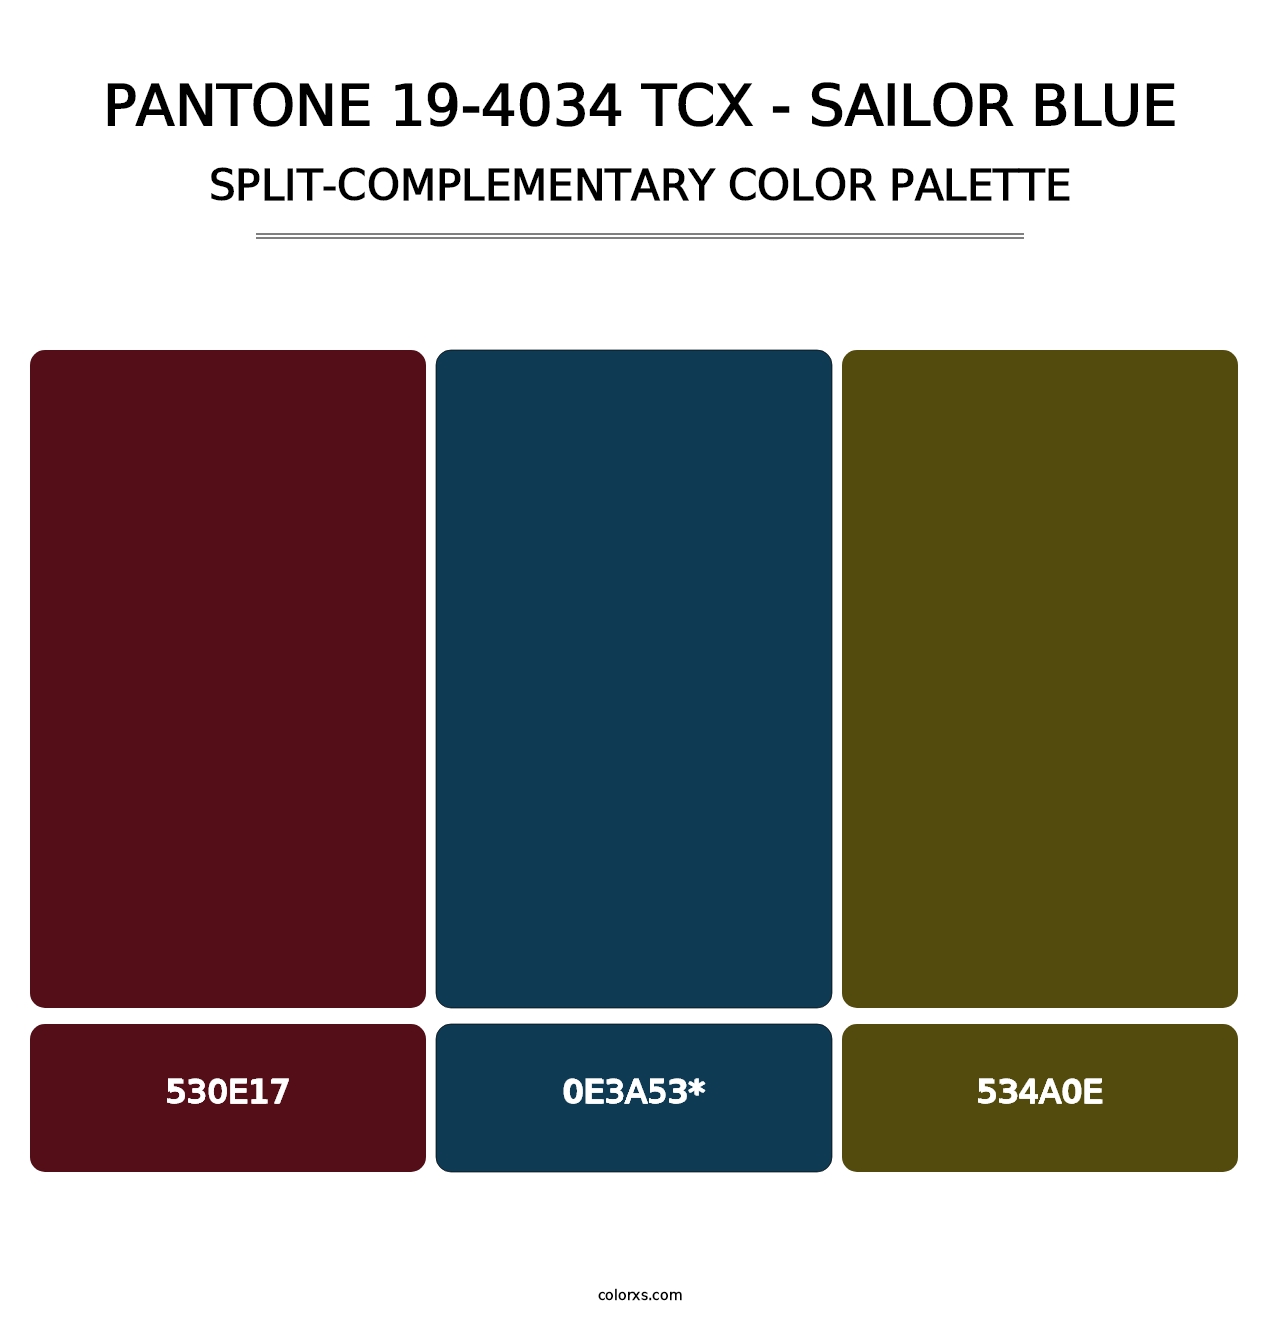 PANTONE 19-4034 TCX - Sailor Blue - Split-Complementary Color Palette